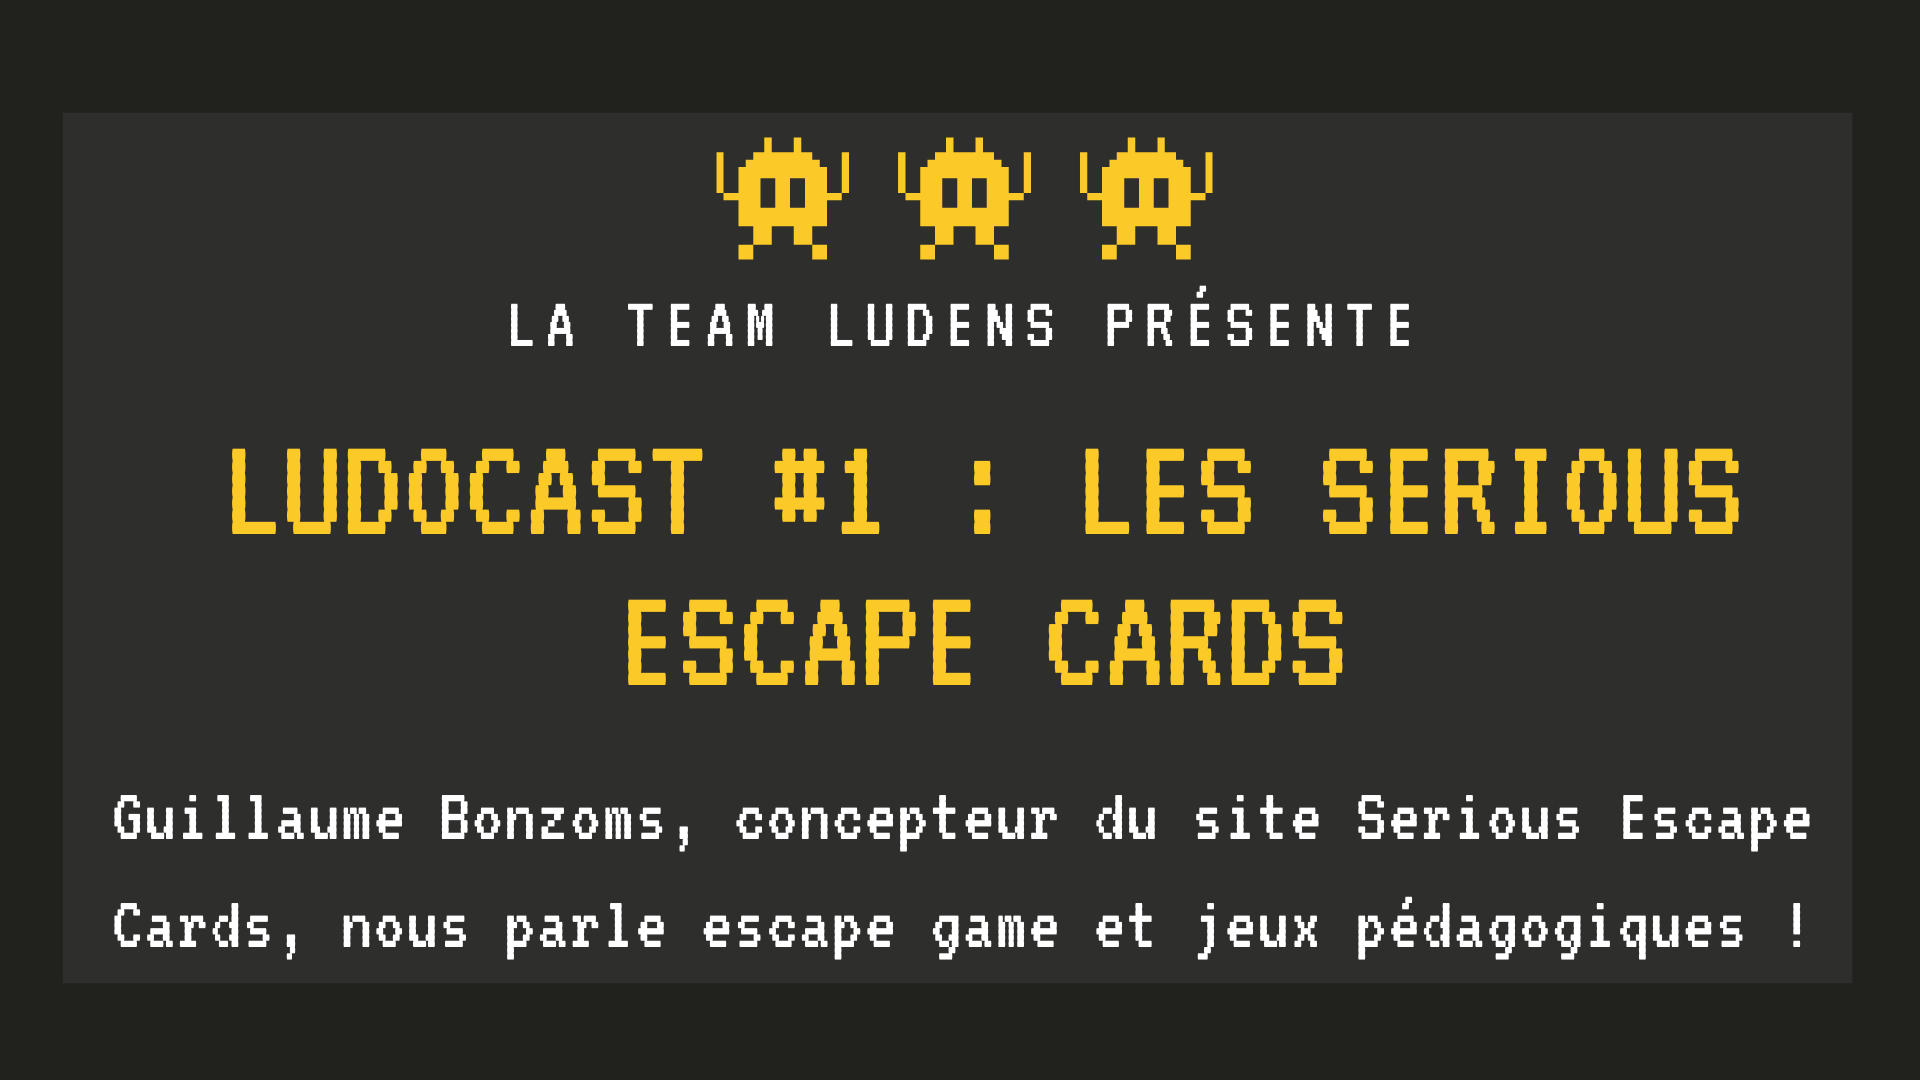 Lire la suite à propos de l’article Ludocast #1 : Les Serious Escape Cards (Guillaume Bonzoms)